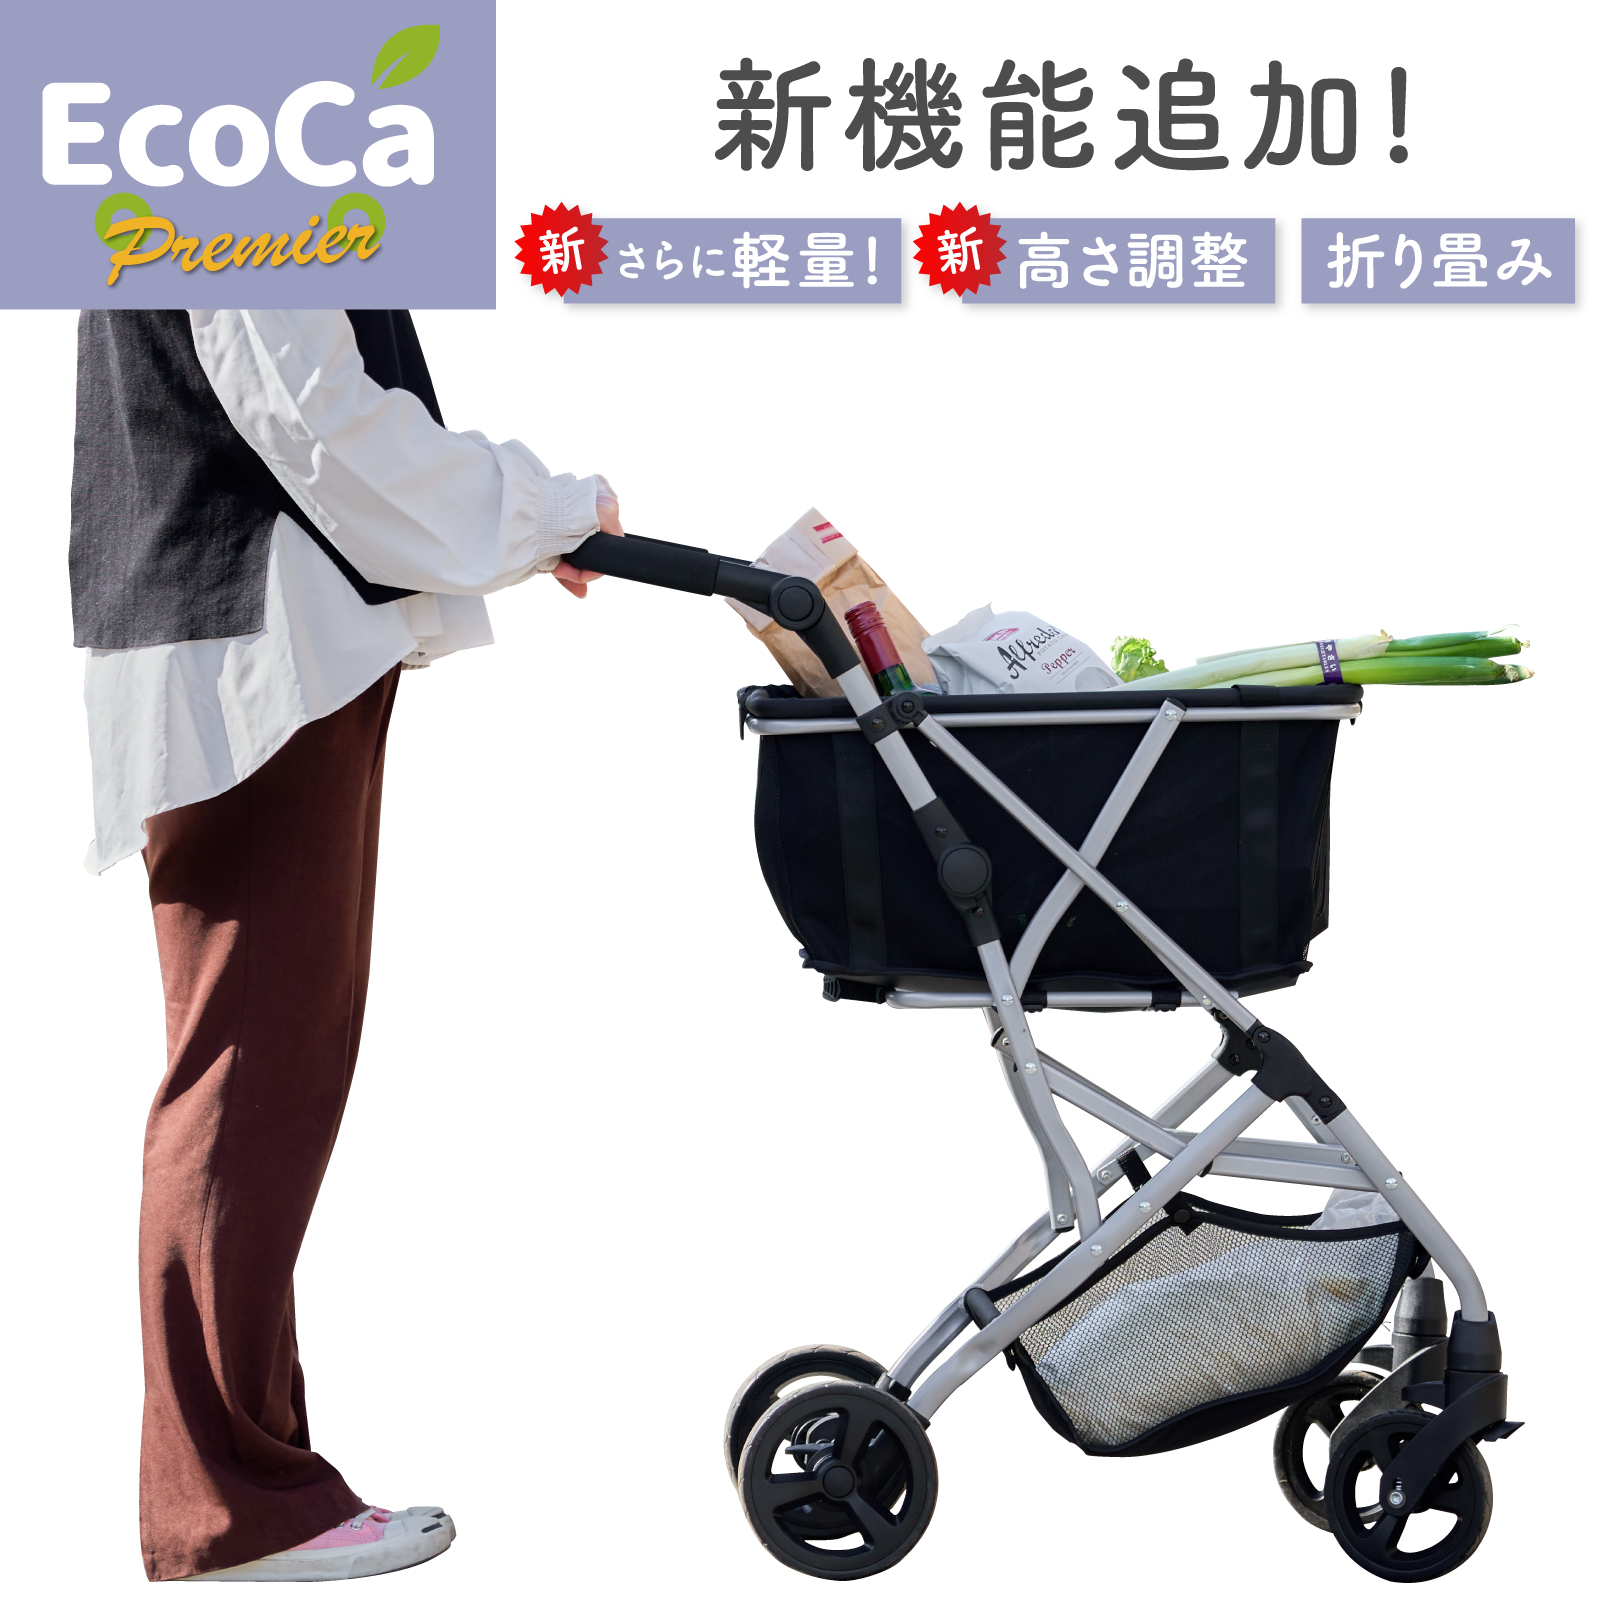 新品未使用 保冷 エコカ ecoca ショッピングカート マイバッグ